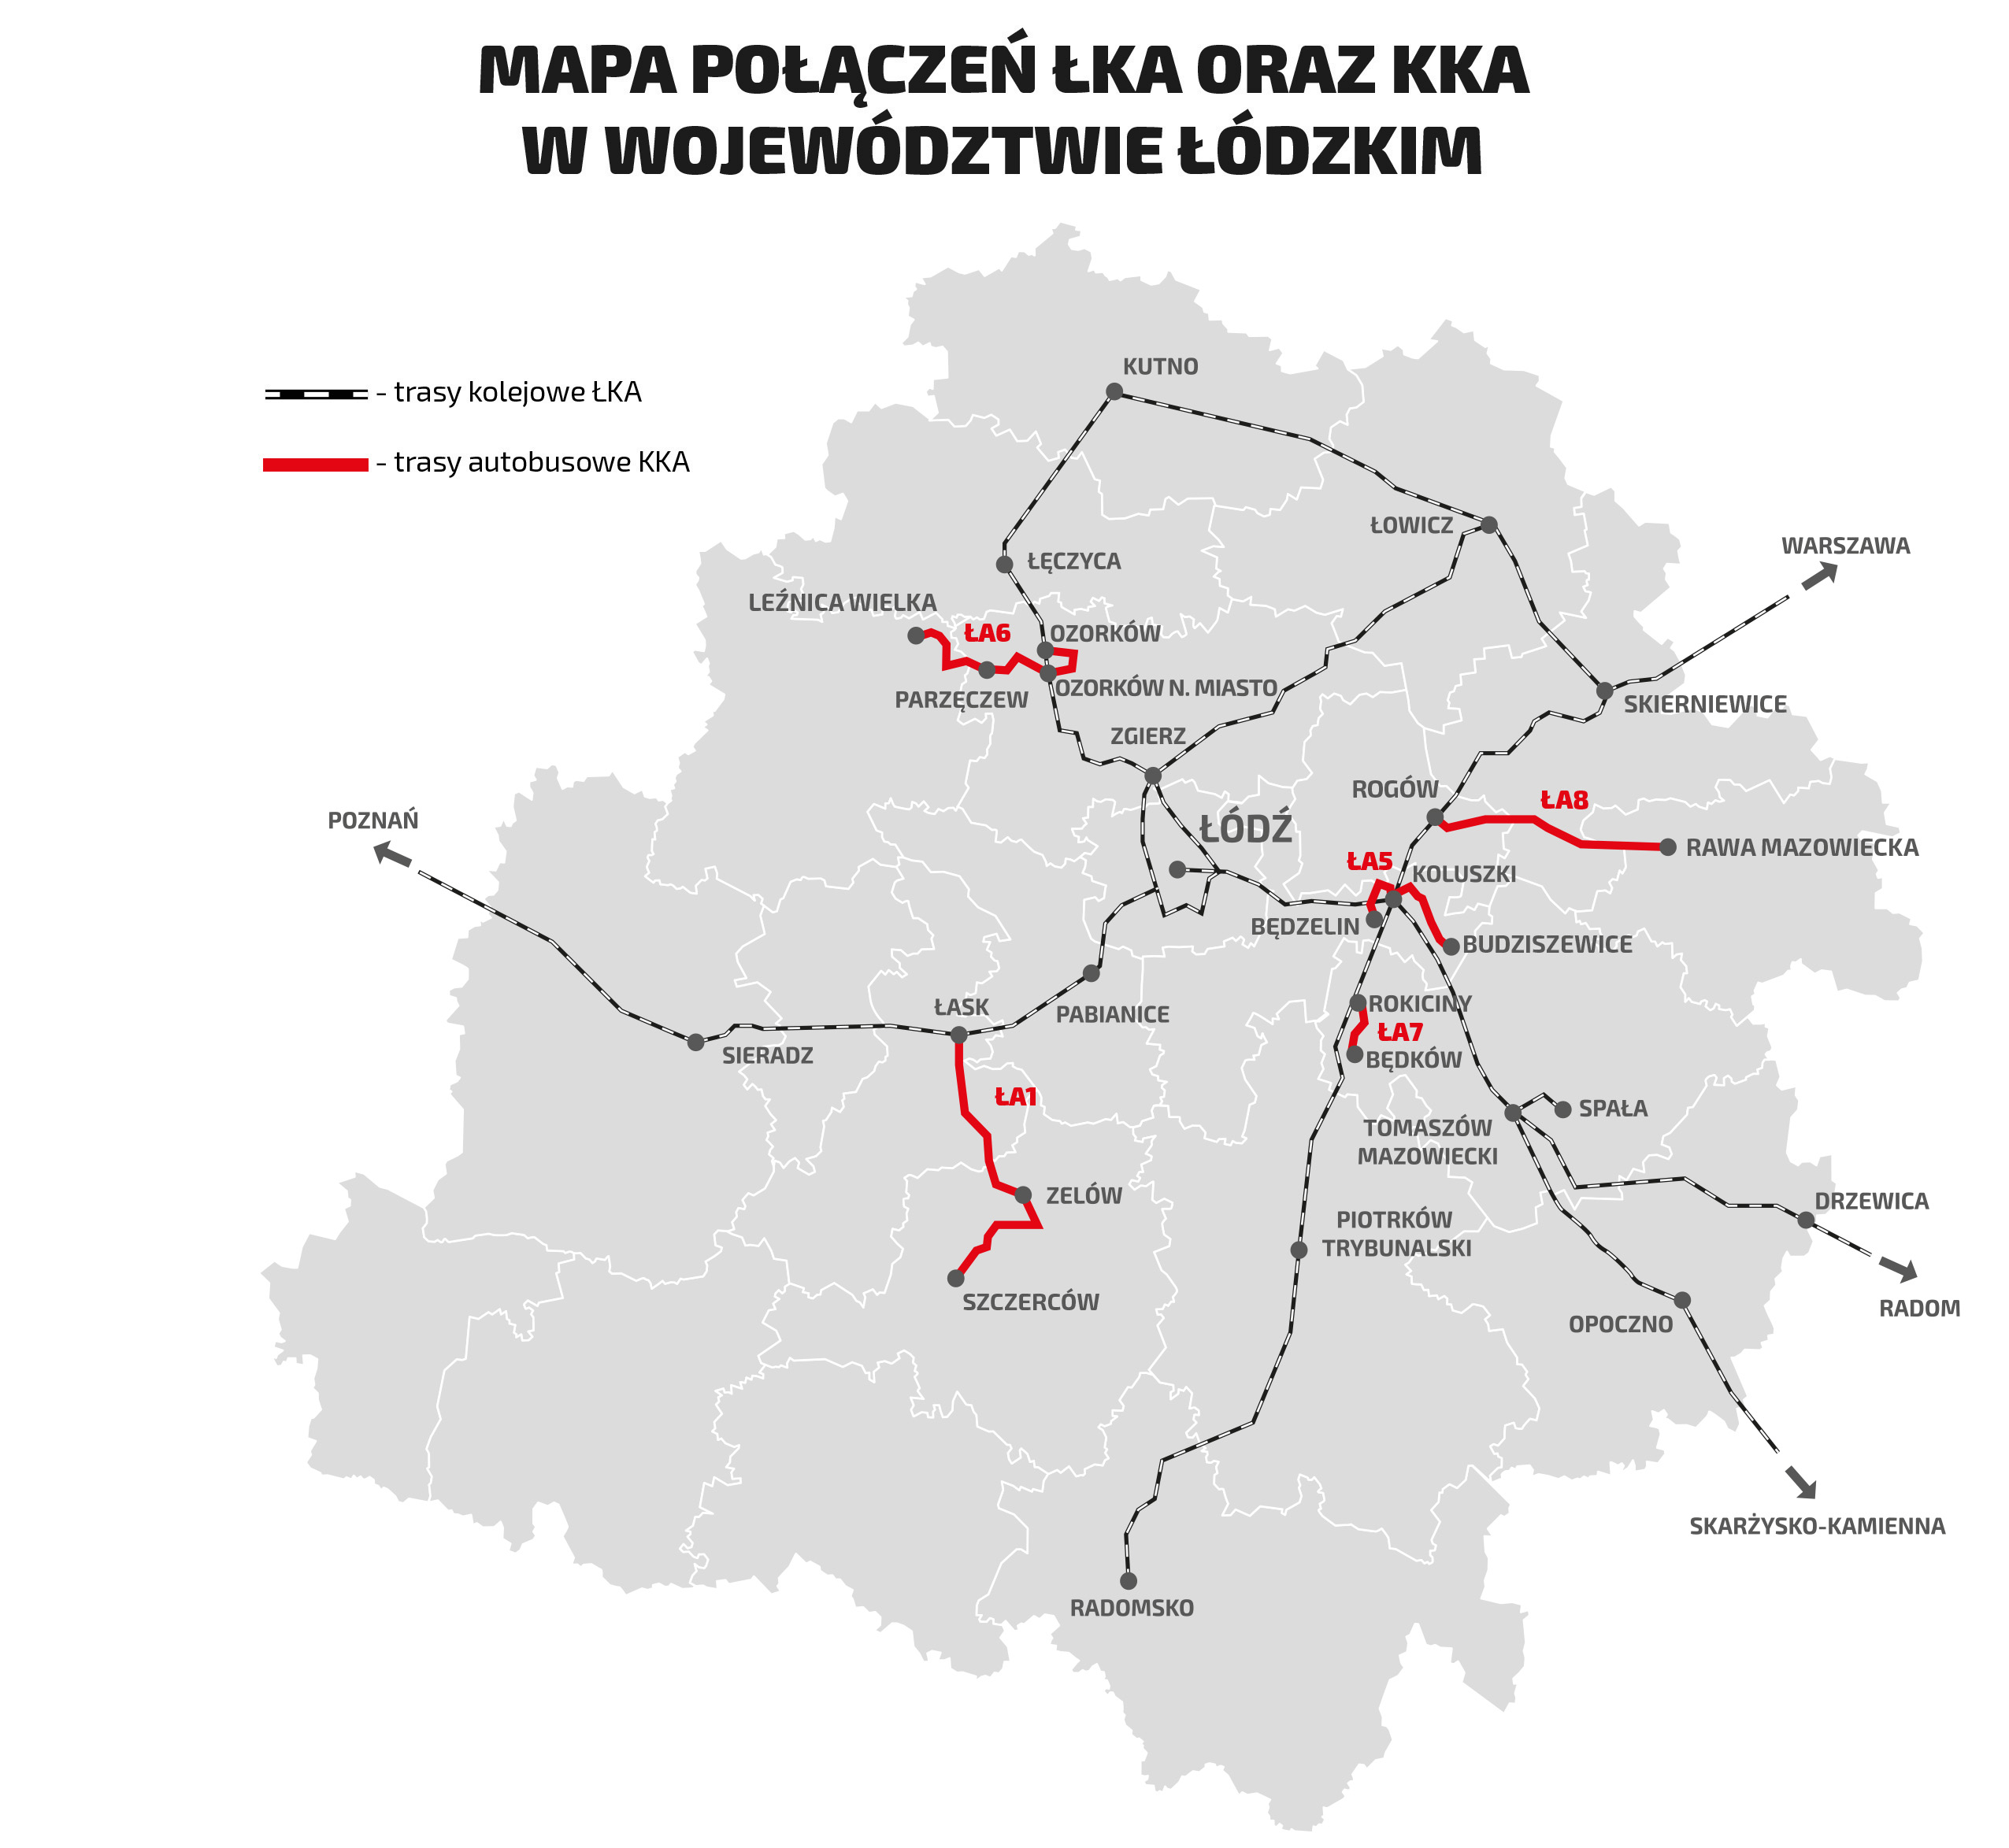 Mapa przedstawia schemat połączeń kolejowych na tle woj. łódzkiego oraz trasy autobusowe opisane poniżej. 